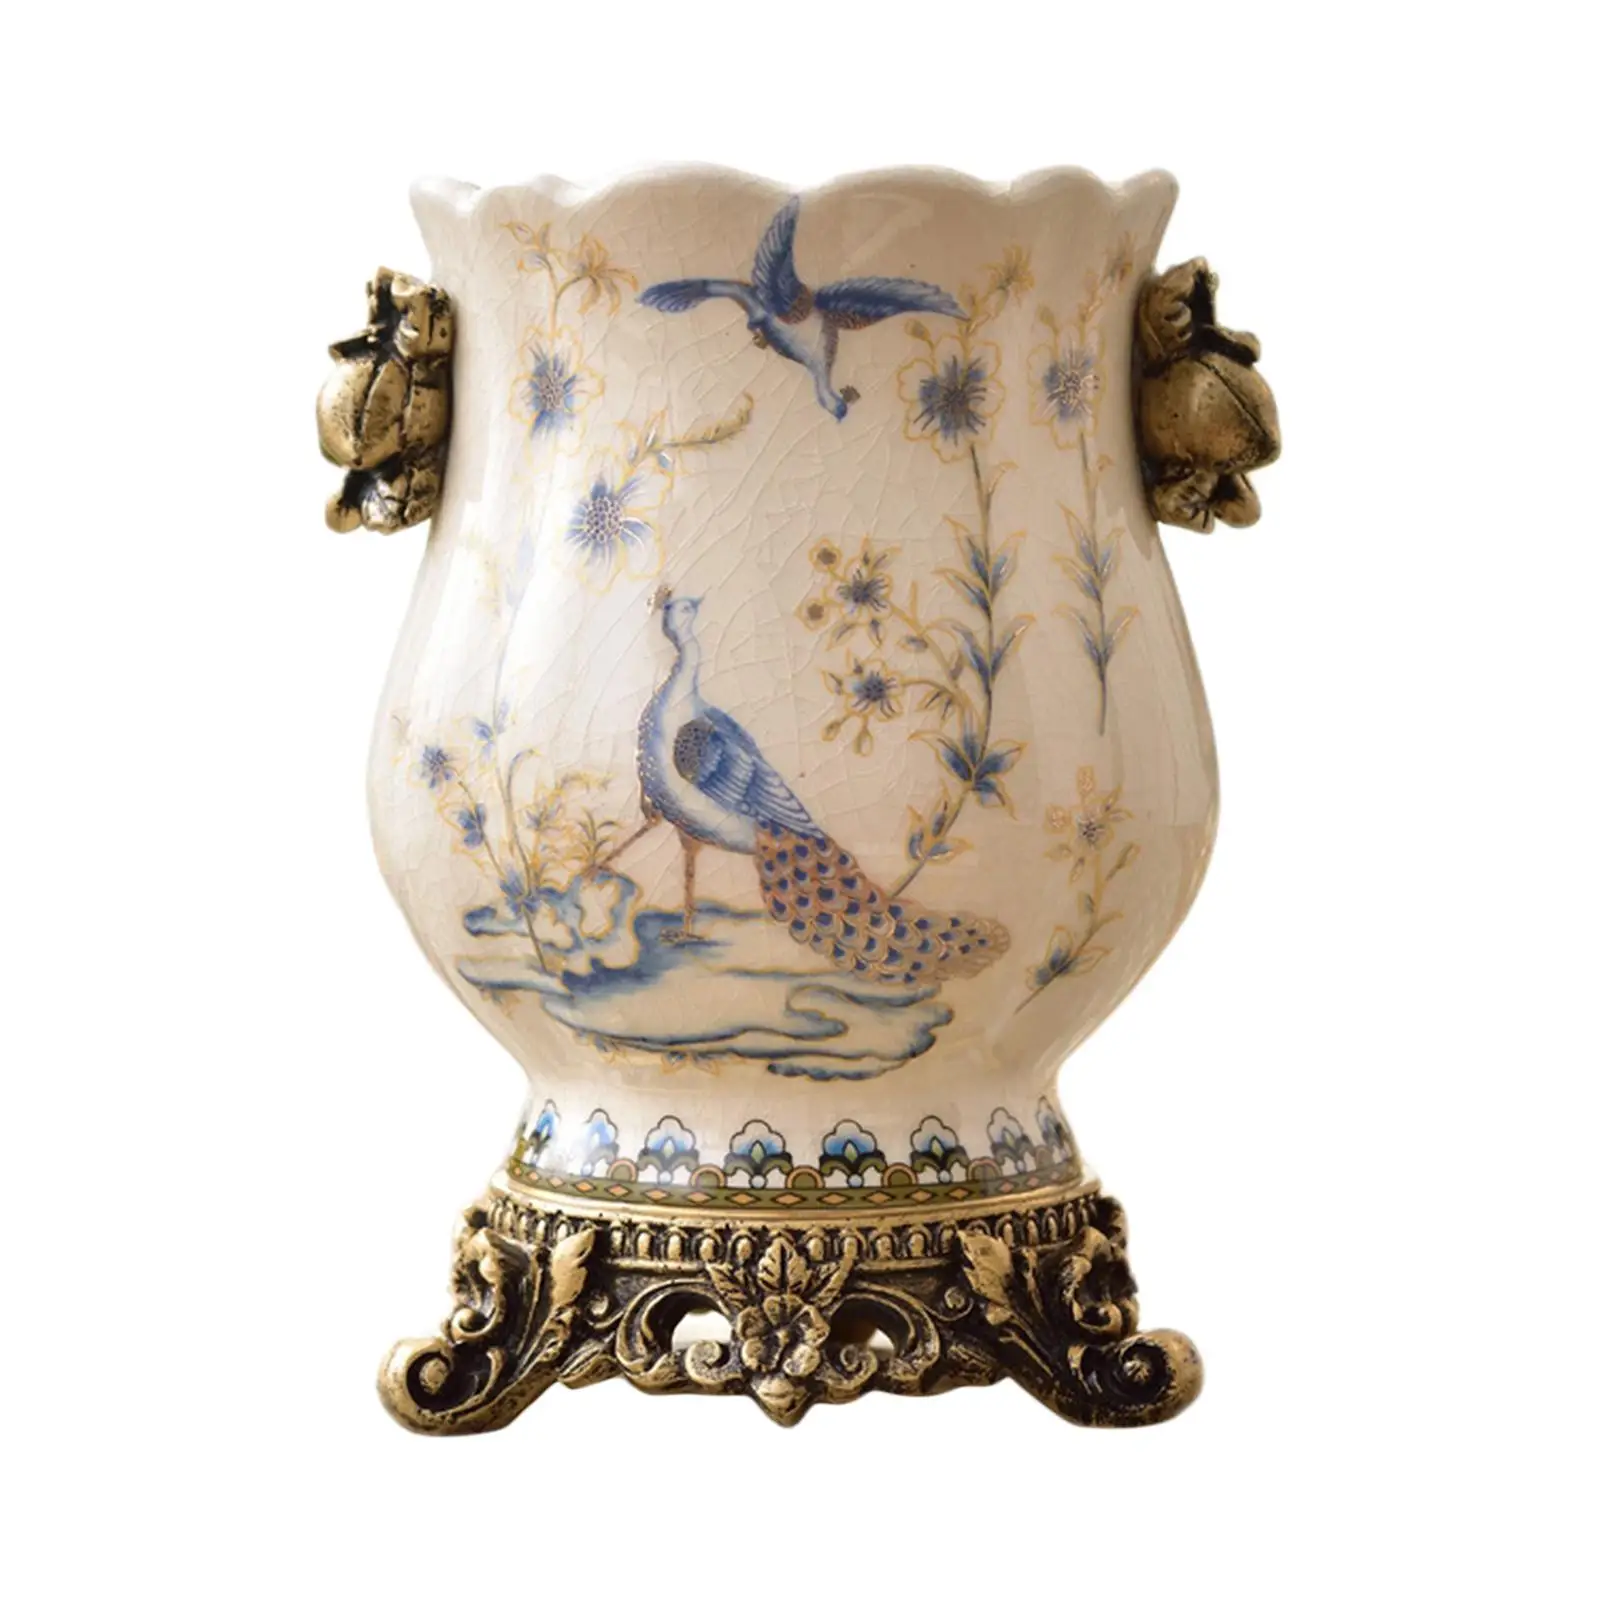 Vintage Ceramic Vase Wedding Gifts Art Crafts Photo Prop Elegant Flowerpot Handicraft for Bedroom Indoor Party Tabletop Decor